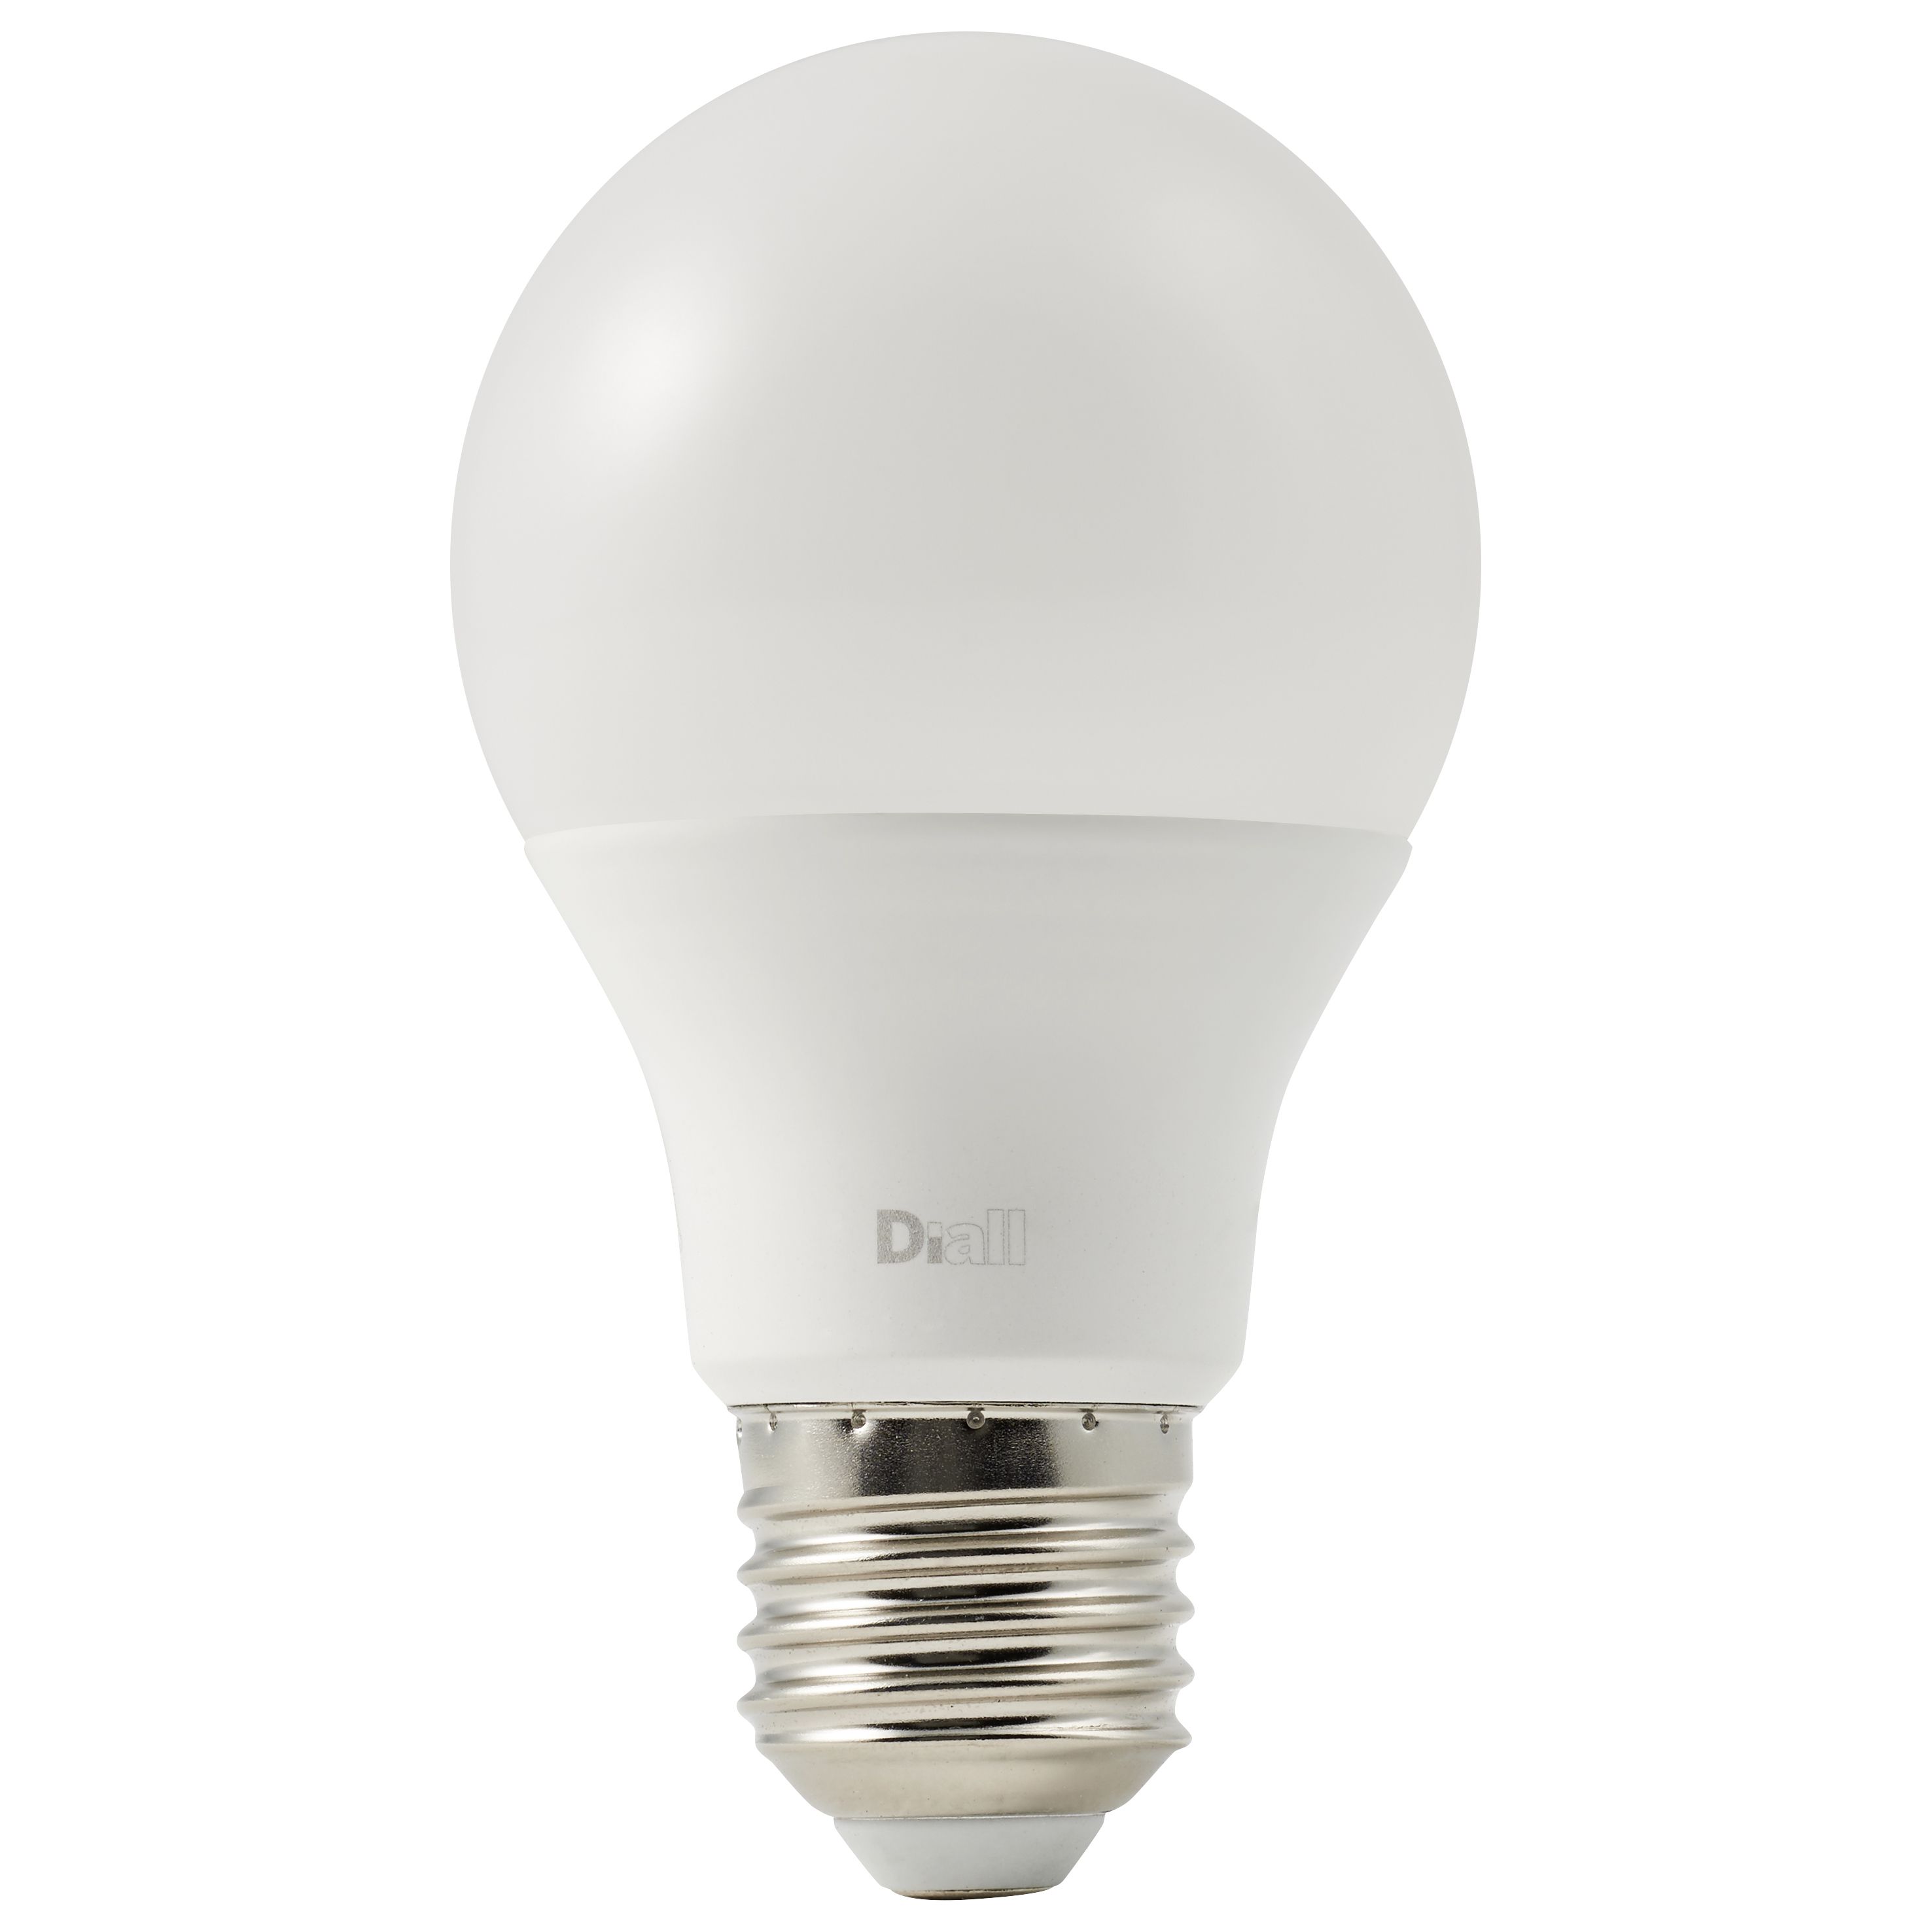 Ampoule LED, E27, Milky, blanc, 2700 k, 806 lm, 360°, LED, Ø6cm